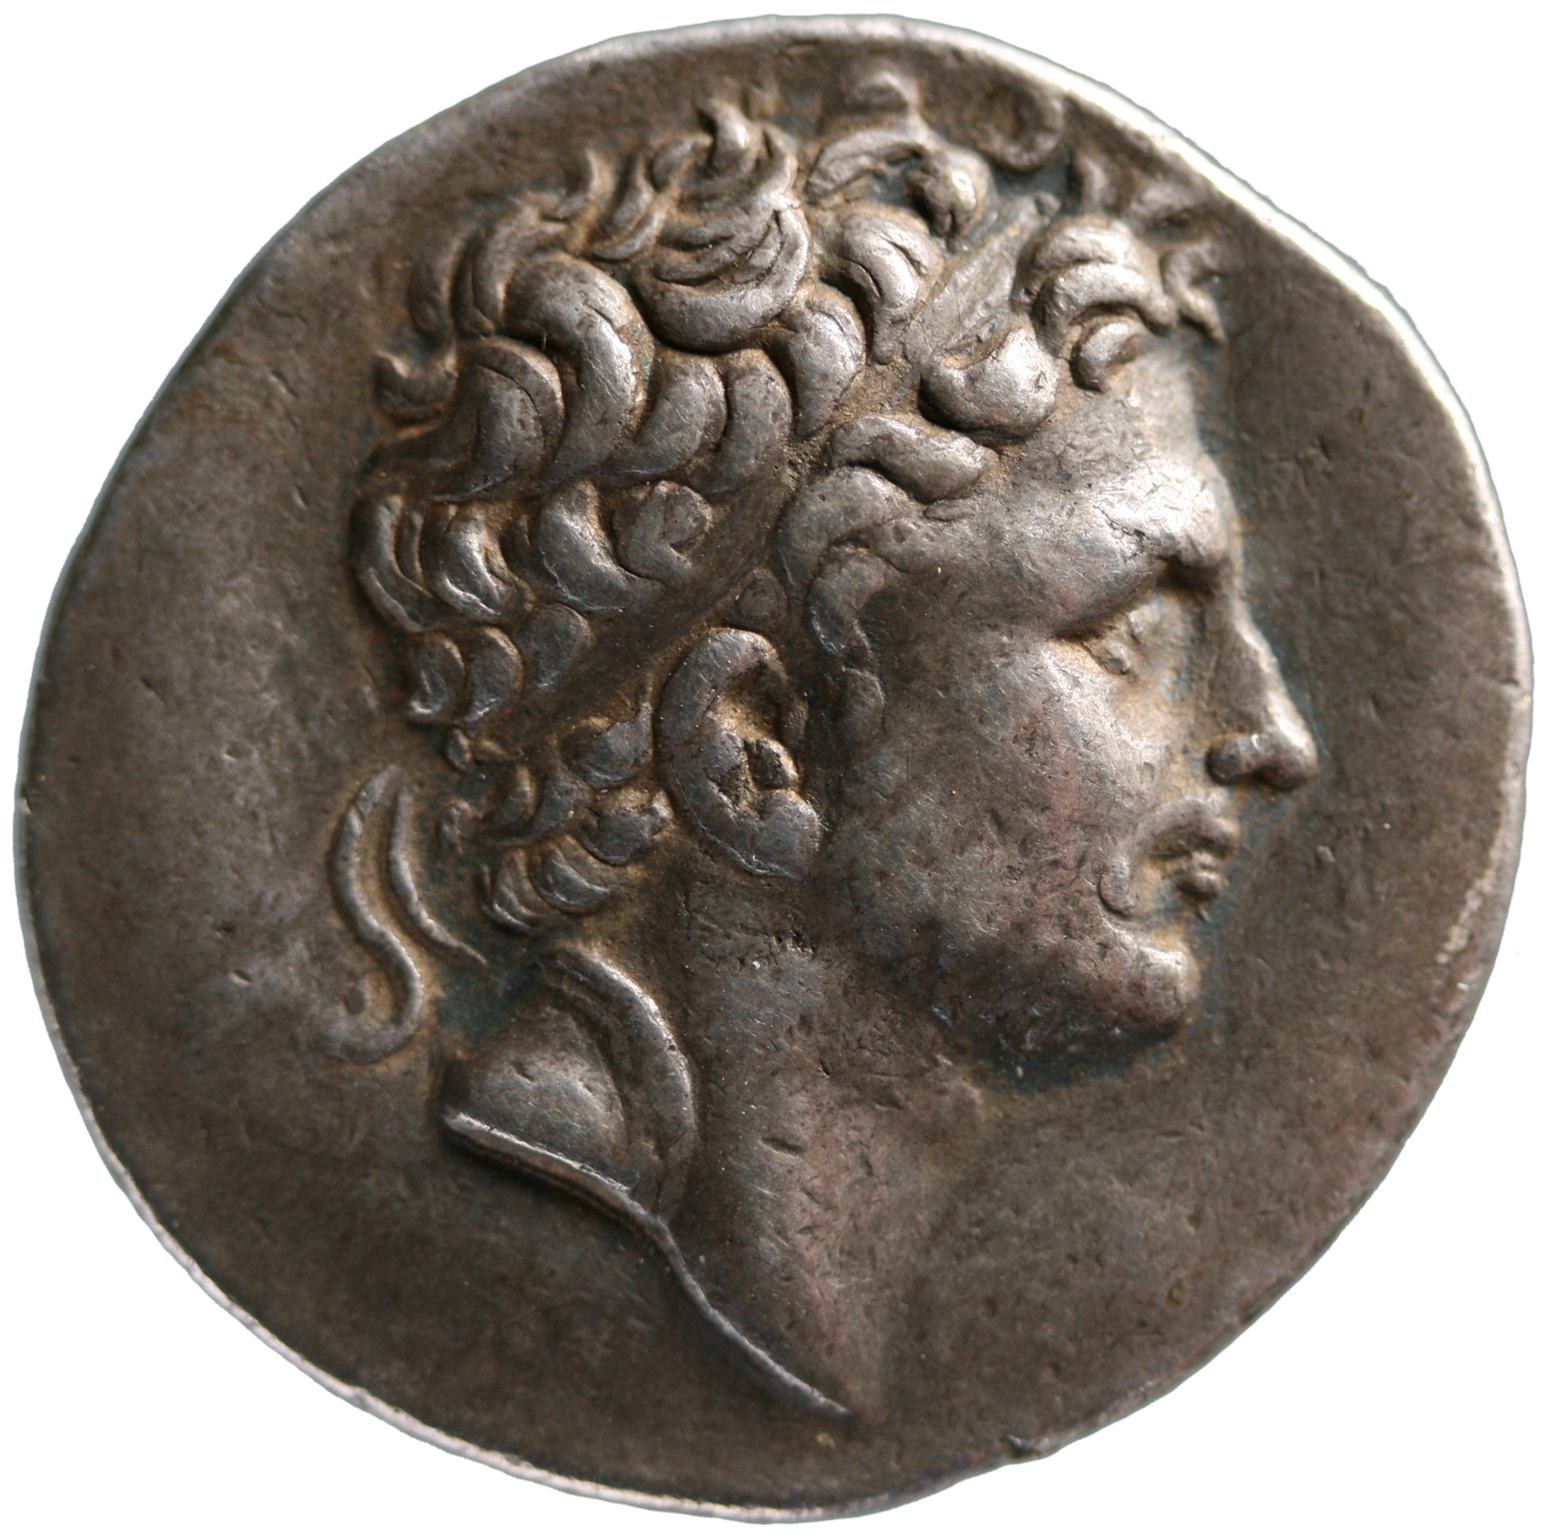 Makedonien: Perseus von Perseus